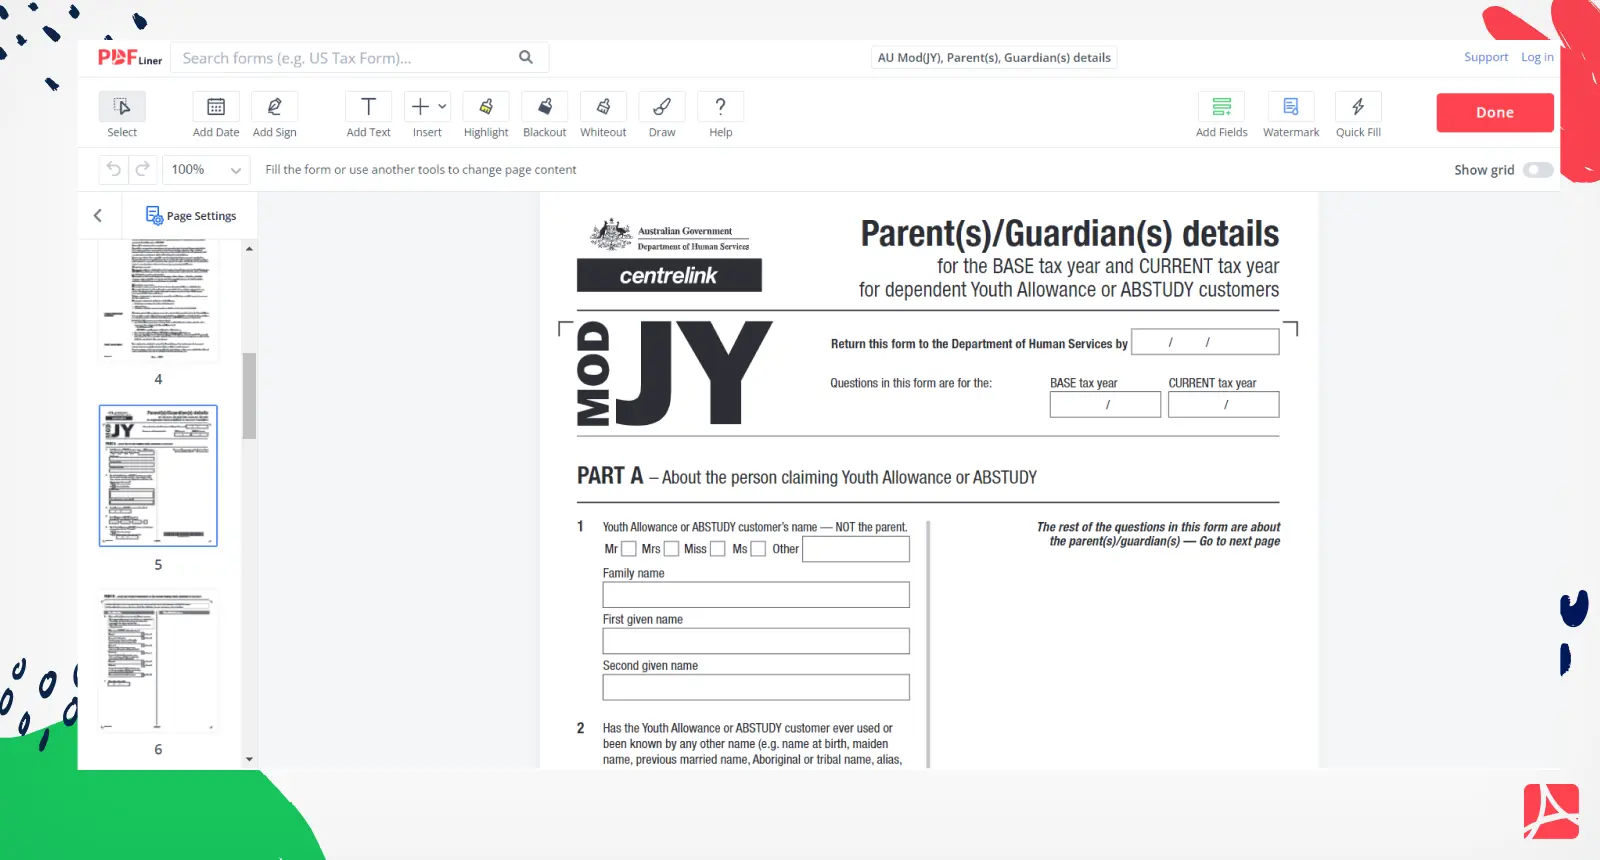 AU Mod(JY), Parent(s), Guardian(s) details Form Screenshot